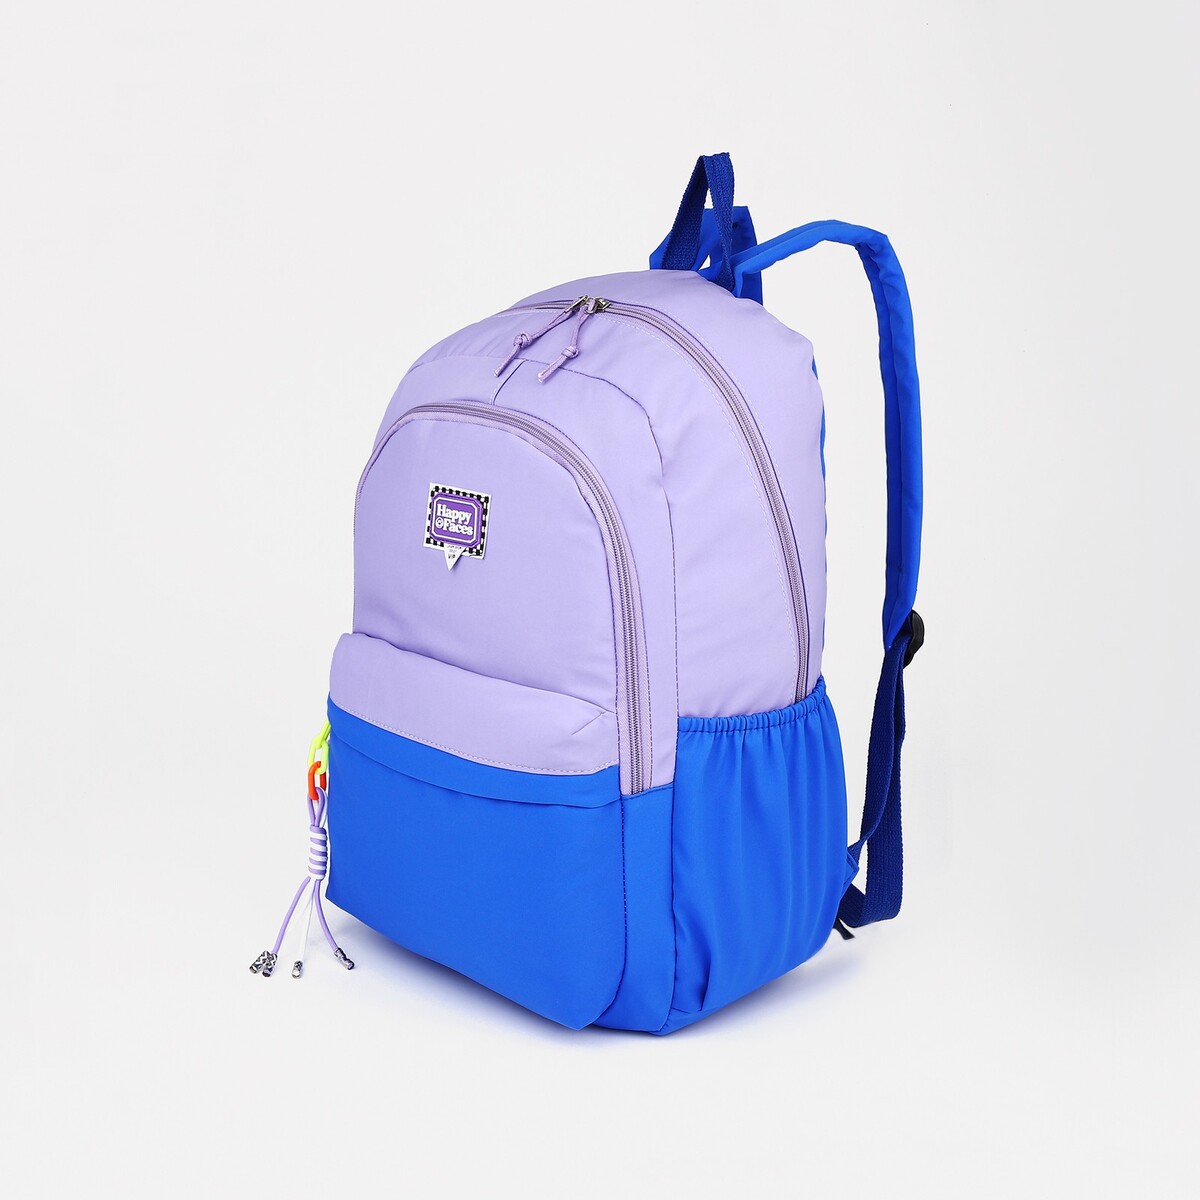 Рюкзак на молнии, 4 наружных кармана, цвет сиреневый/синий рюкзак туристический на молнии 4 наружных кармана красный